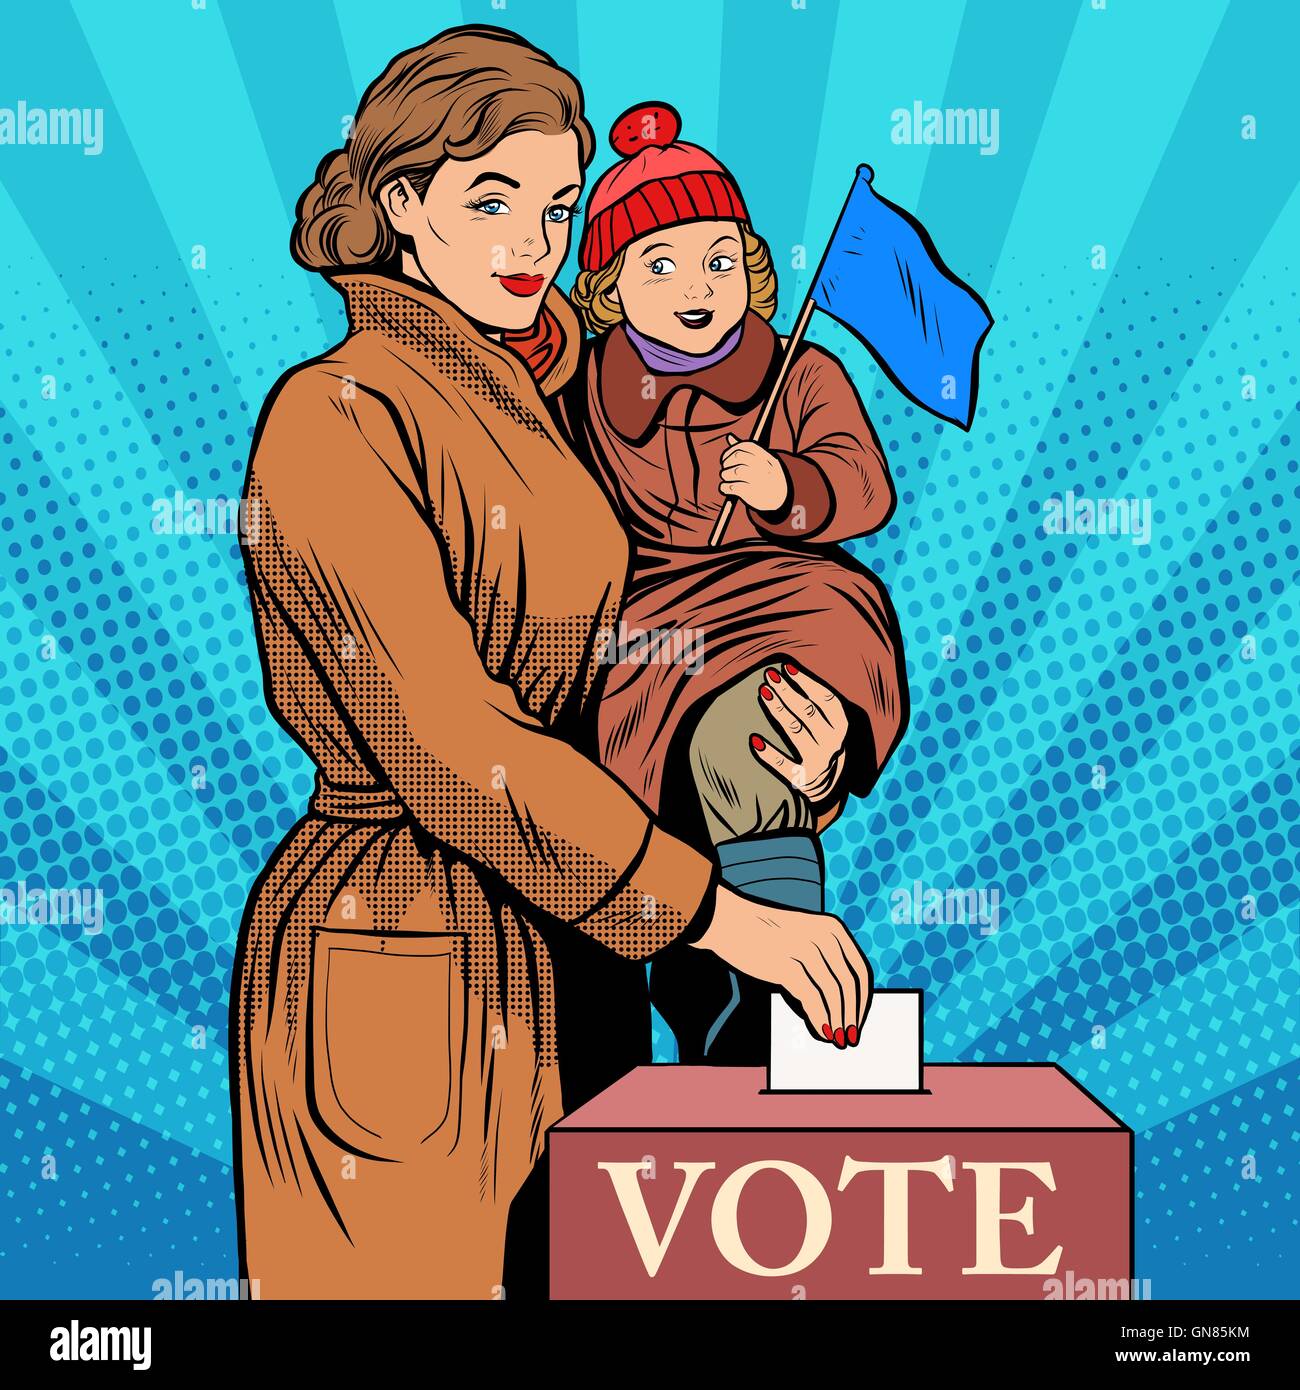 La mère et l'enfant, les femmes votent aux élections Illustration de Vecteur